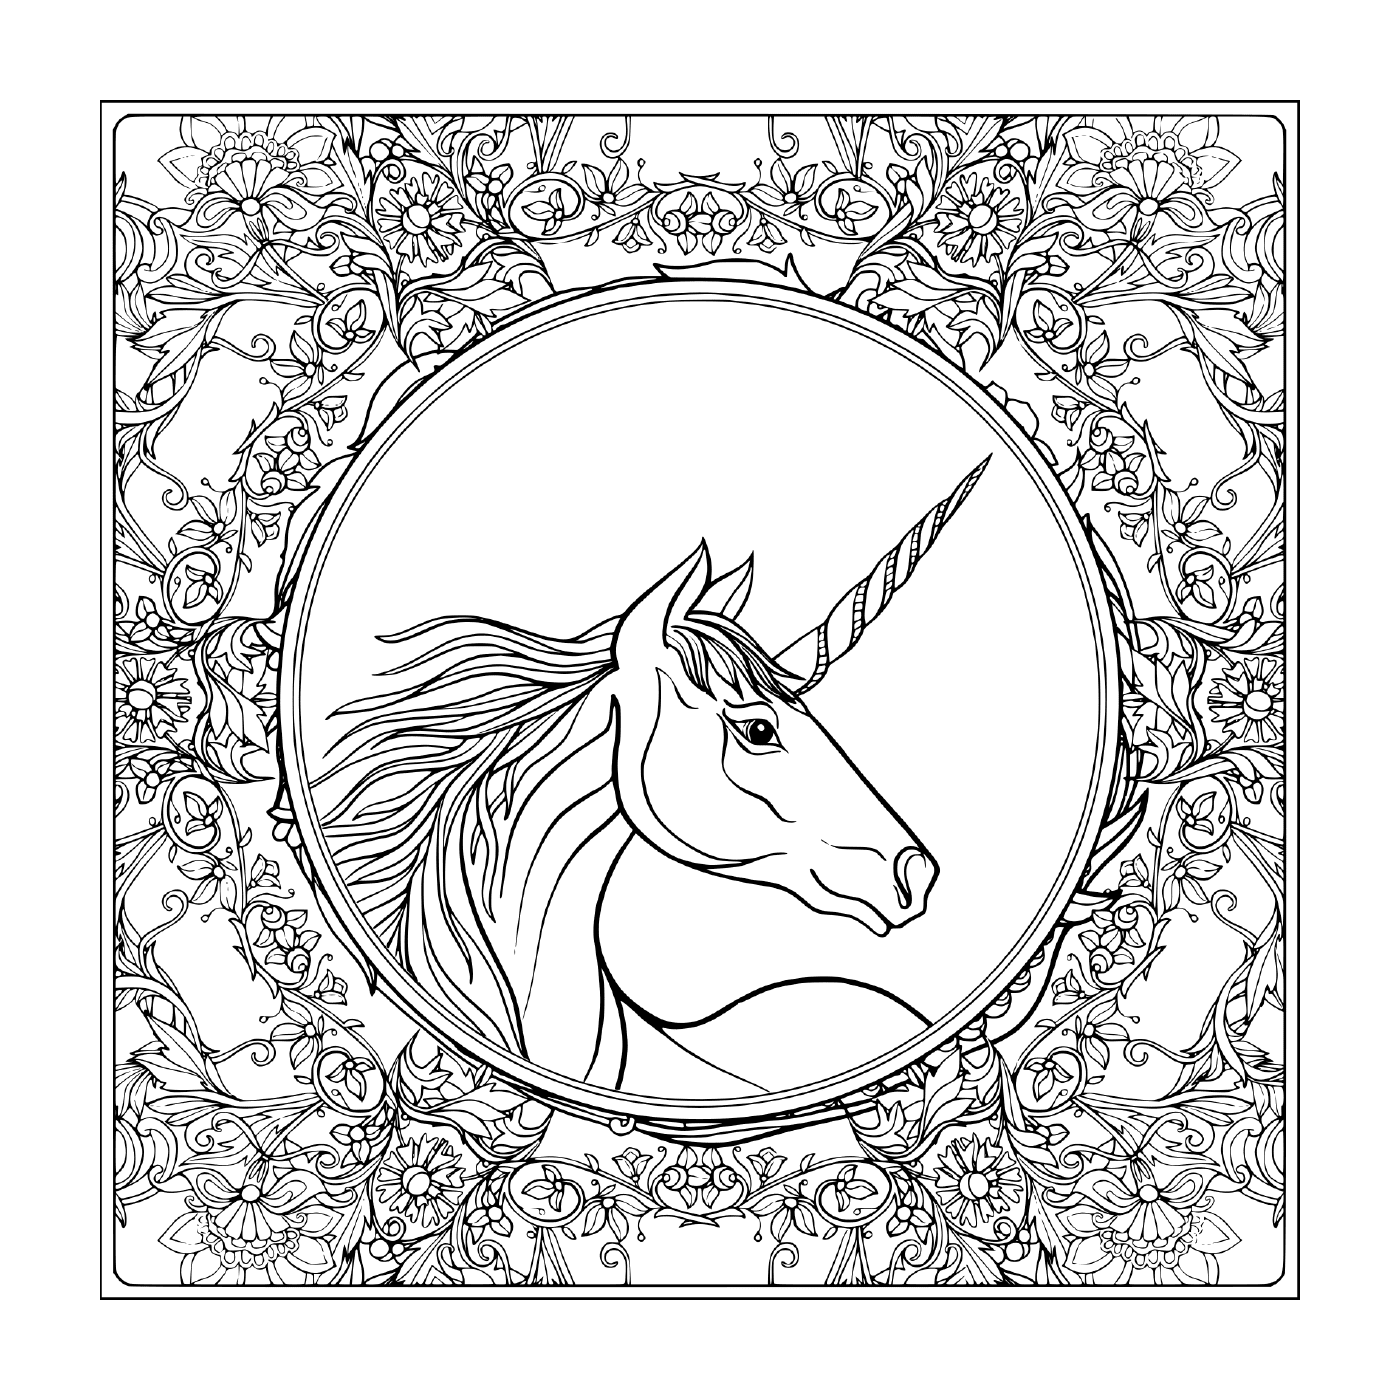  Unicorno d'epoca in un mandala floreale 